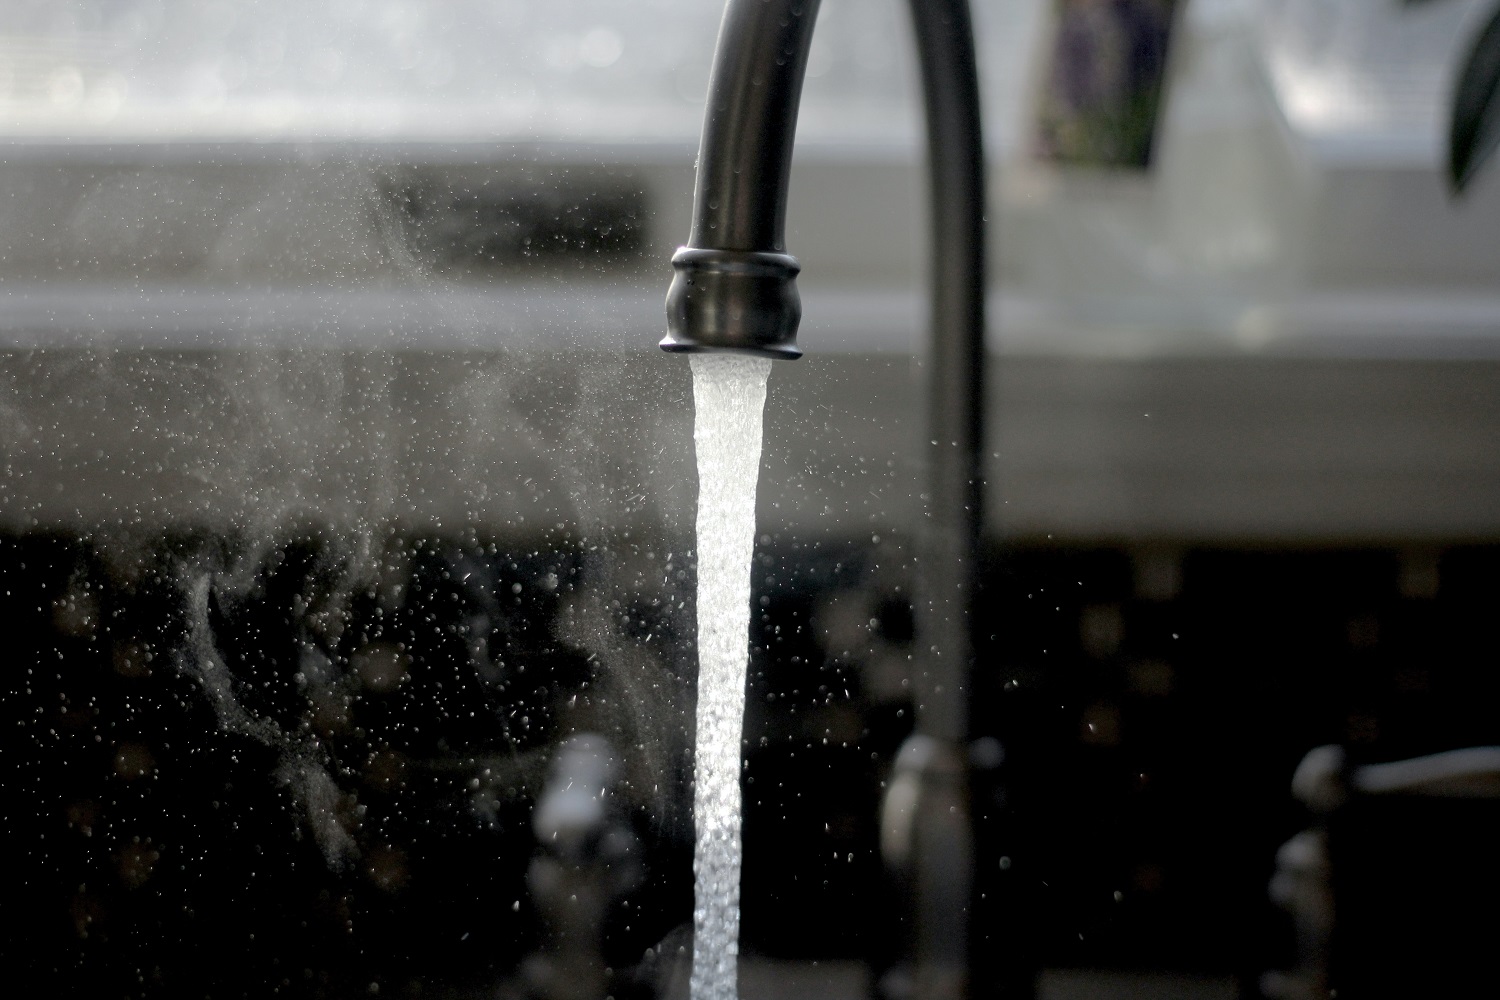 5 būdai, kaip leidžiant daugiau laiko namuose galima sutaupyti vandens